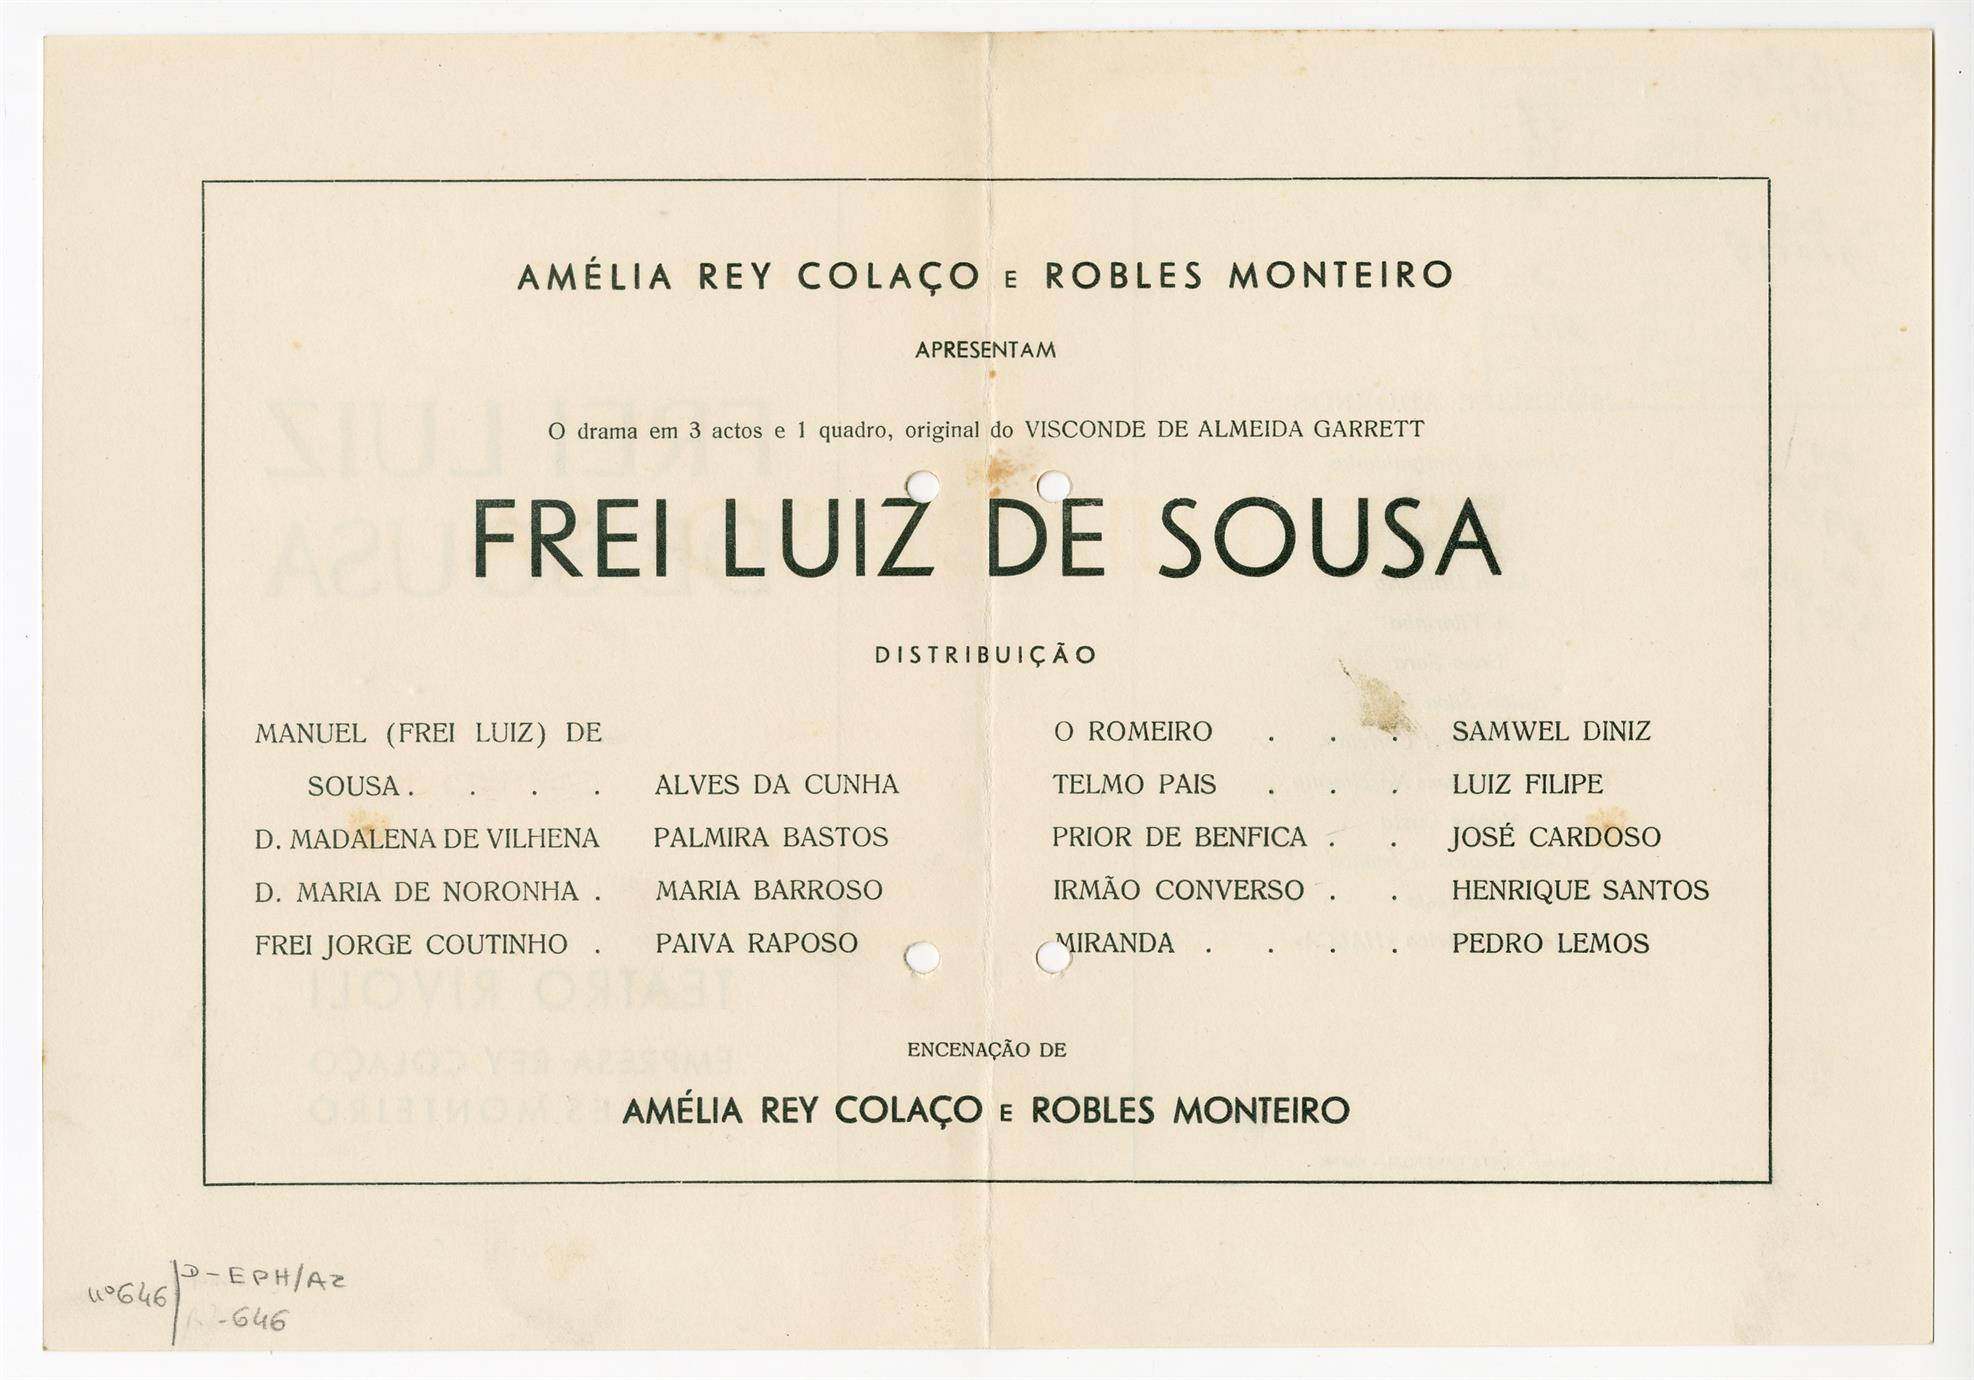 Frei Luís de Sousa